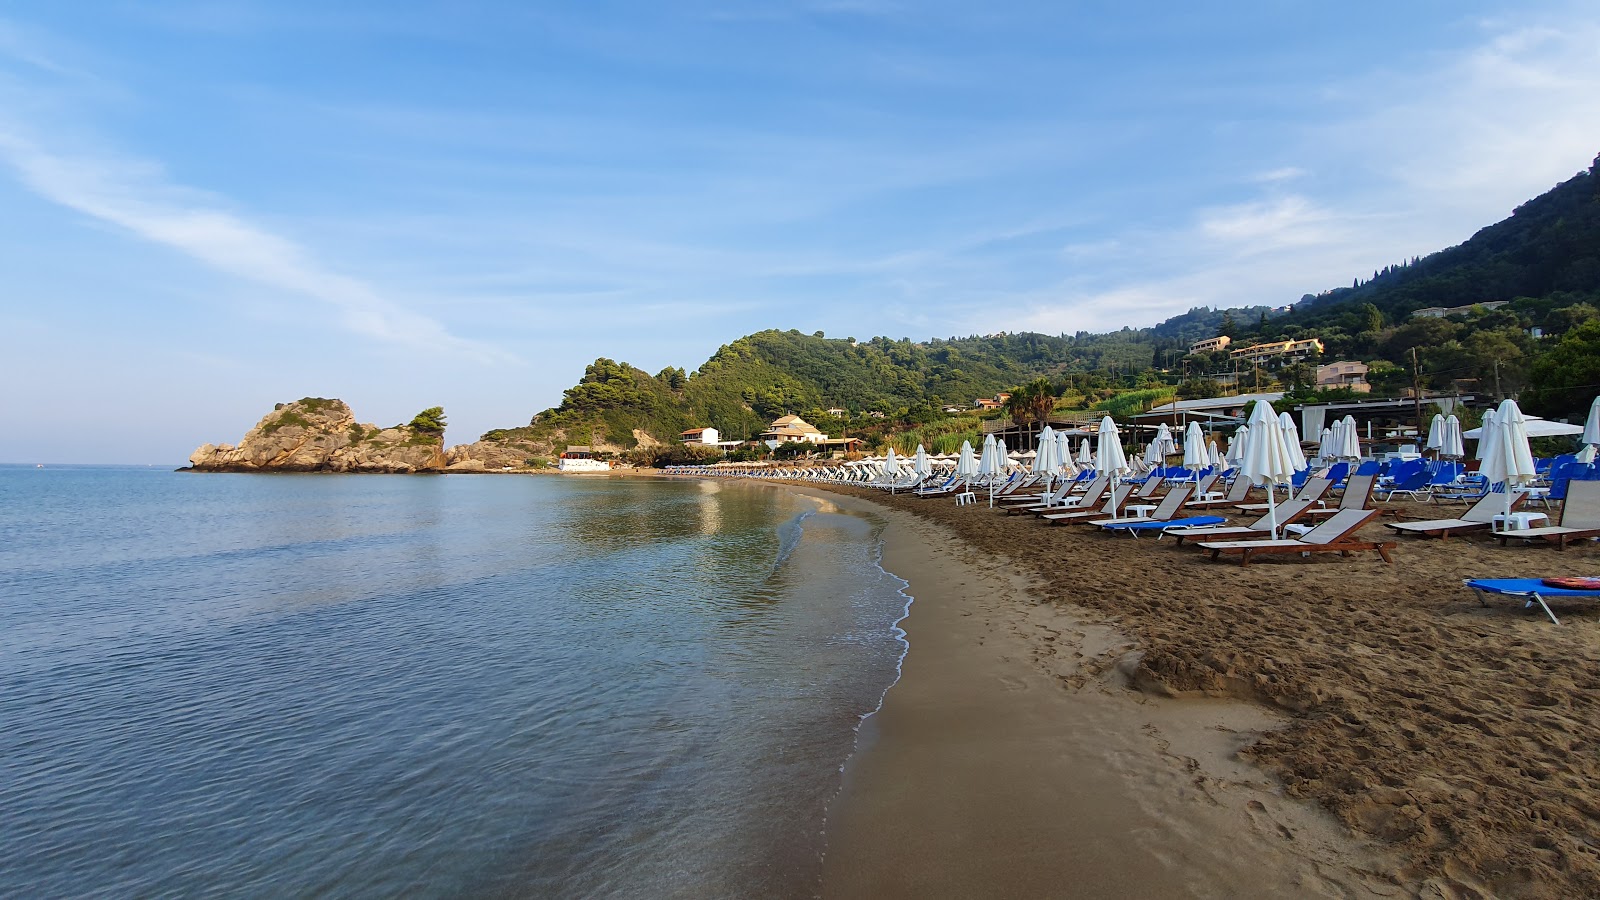 Foto av Kontogialos Stranden - populär plats bland avkopplingskännare